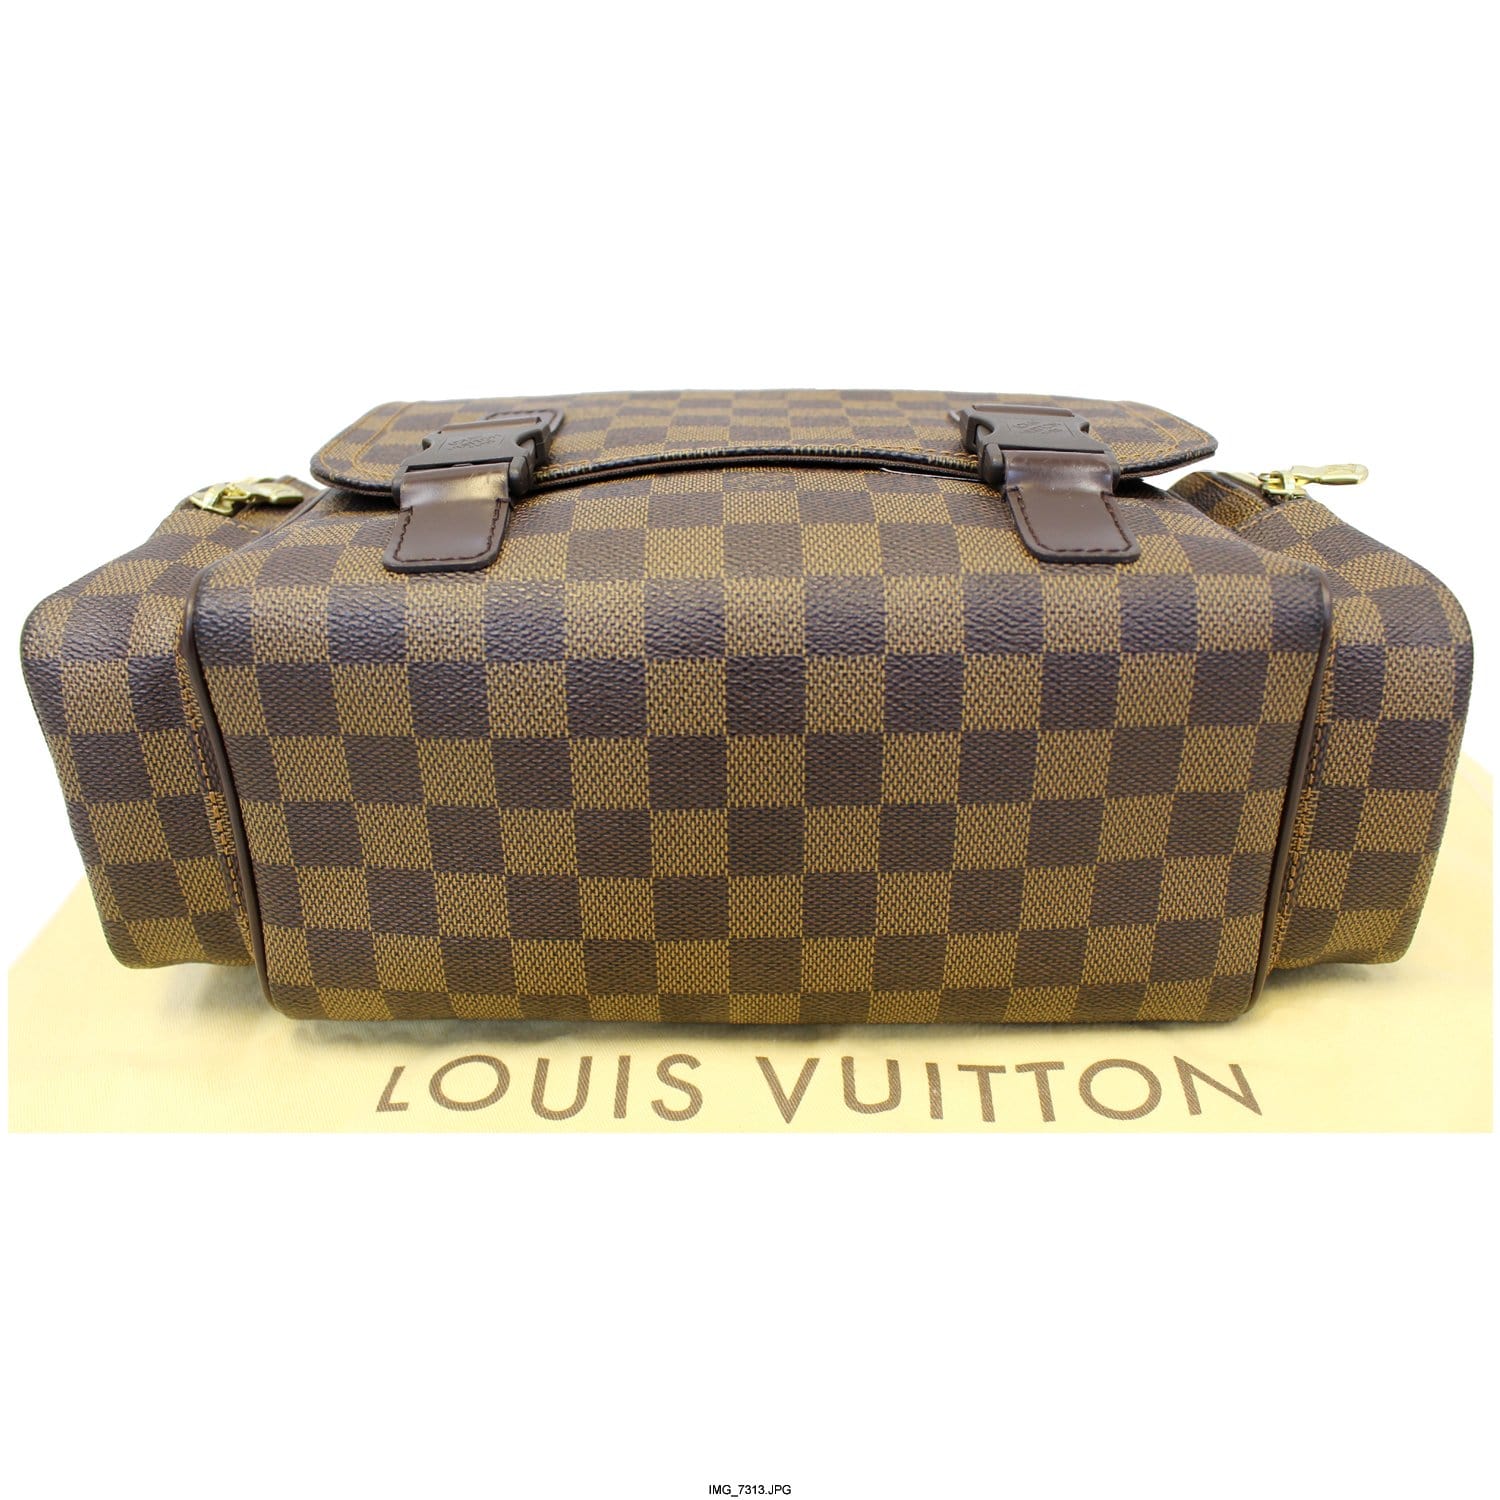 Louis Vuitton Damier Ebene Melville Reporter, Louis Vuitton Handbags